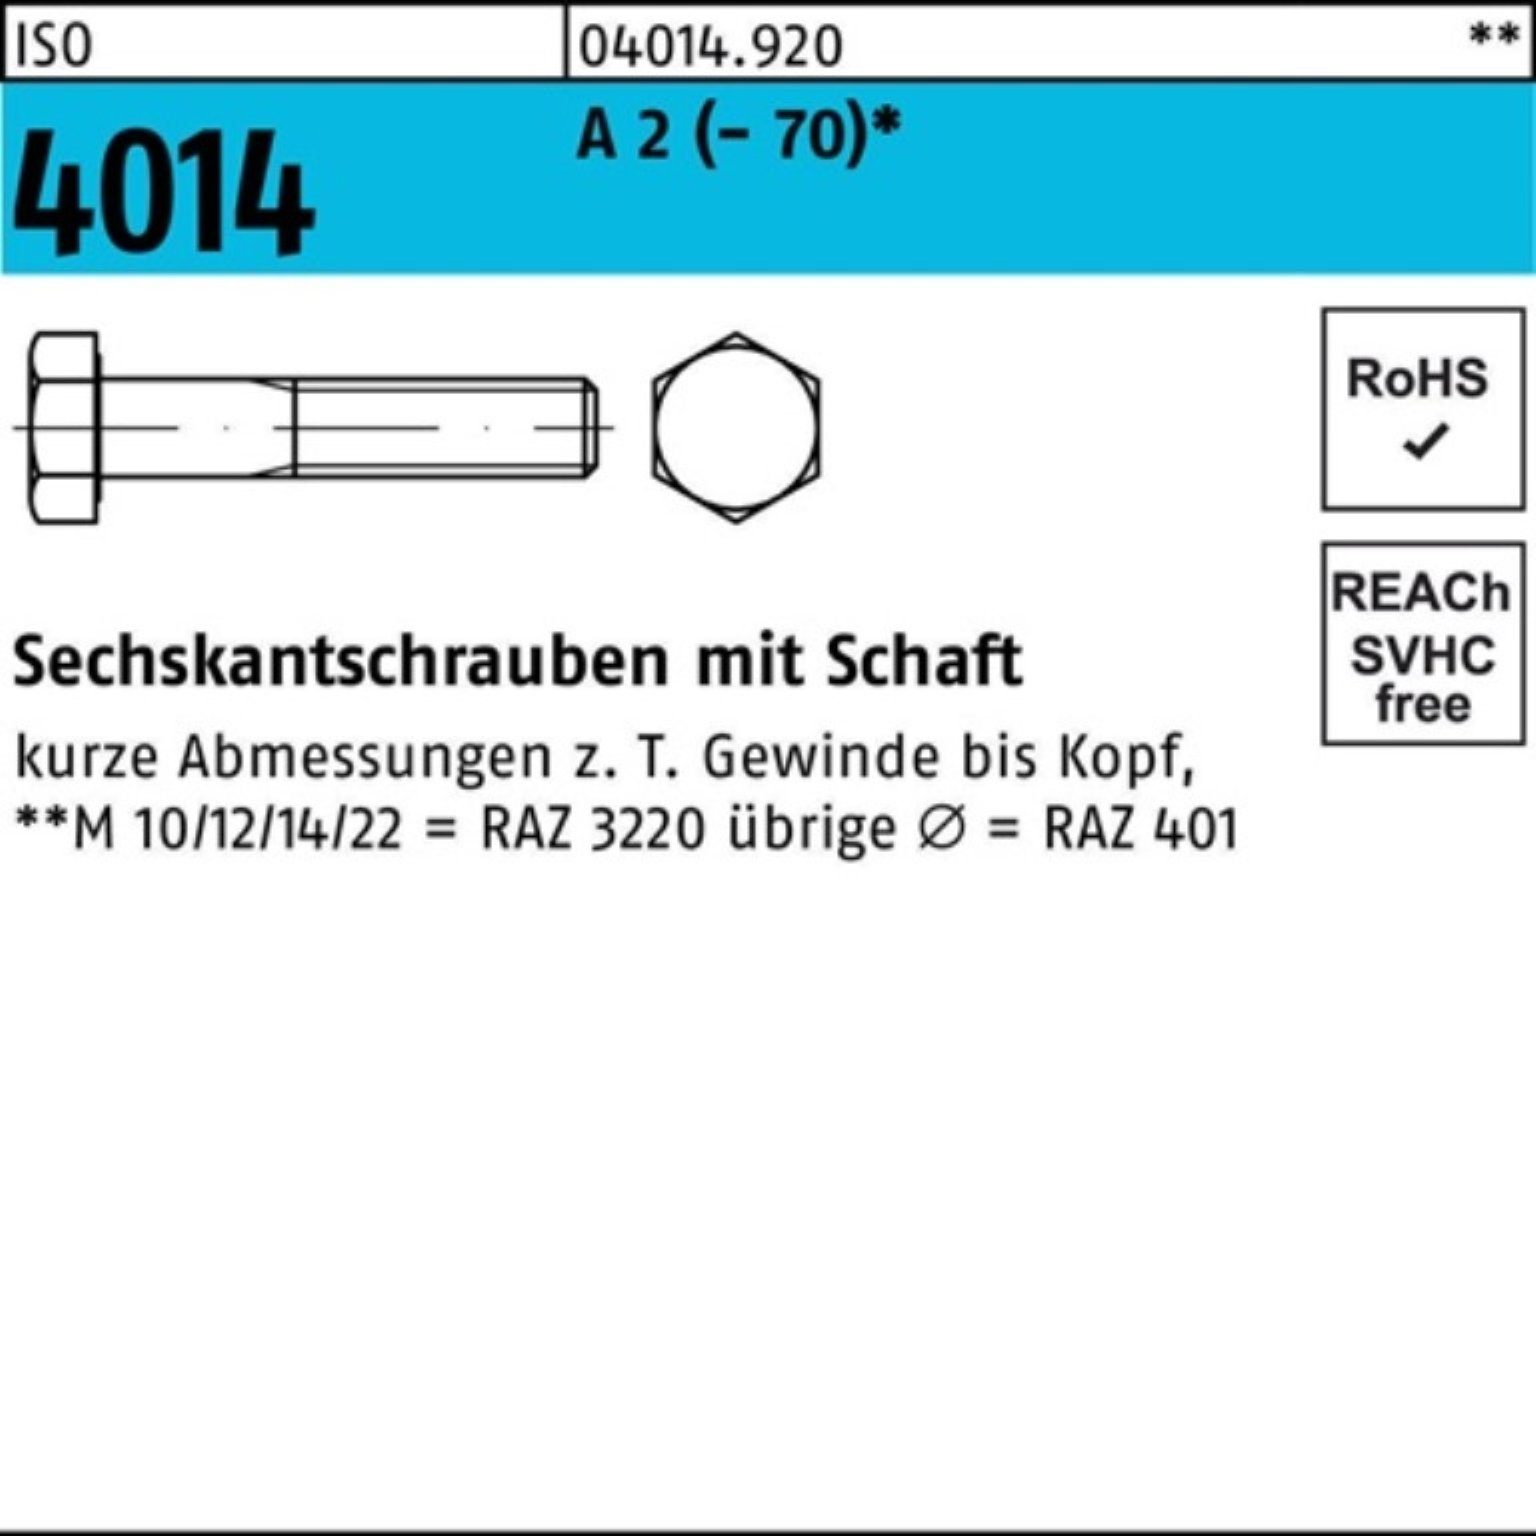 Bufab Sechskantschraube 100er Pack Sechskantschraube ISO 4014 Schaft M16x 250 A 2 (70) 1 St